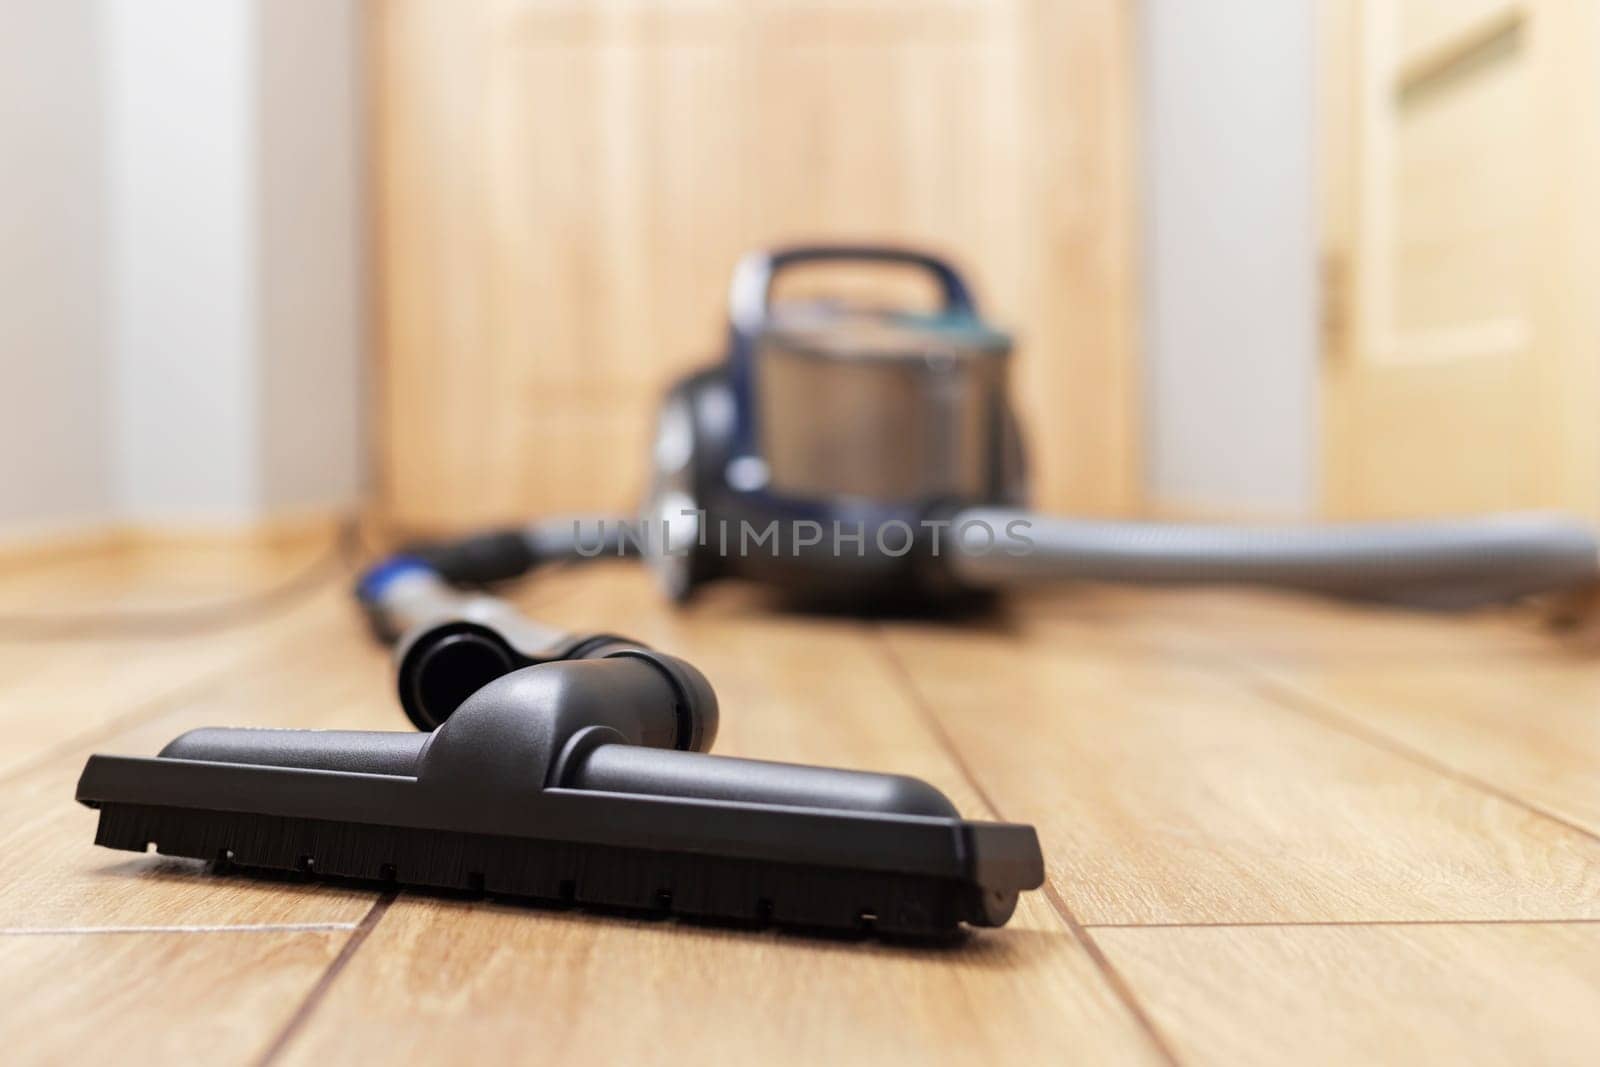 Vacuum Cleaner on Wooden Floor by andreyz